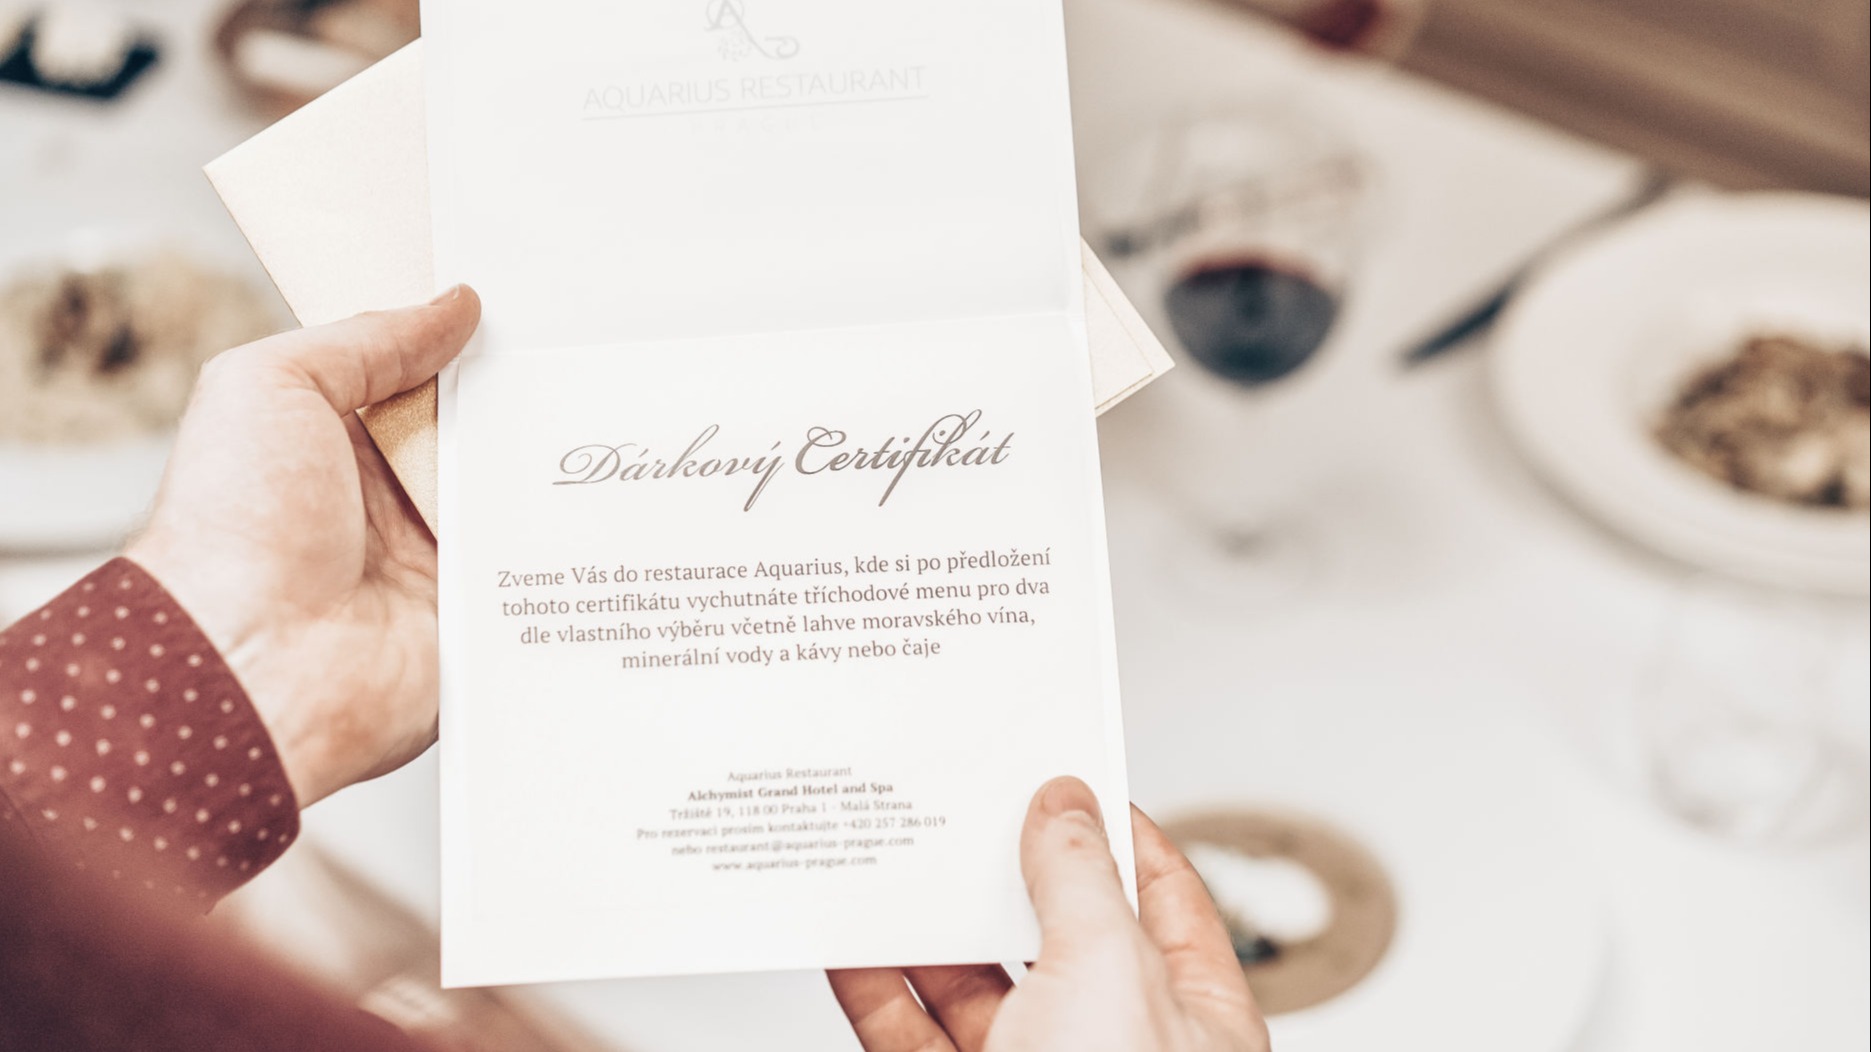 Restaurant gift certificate in hands